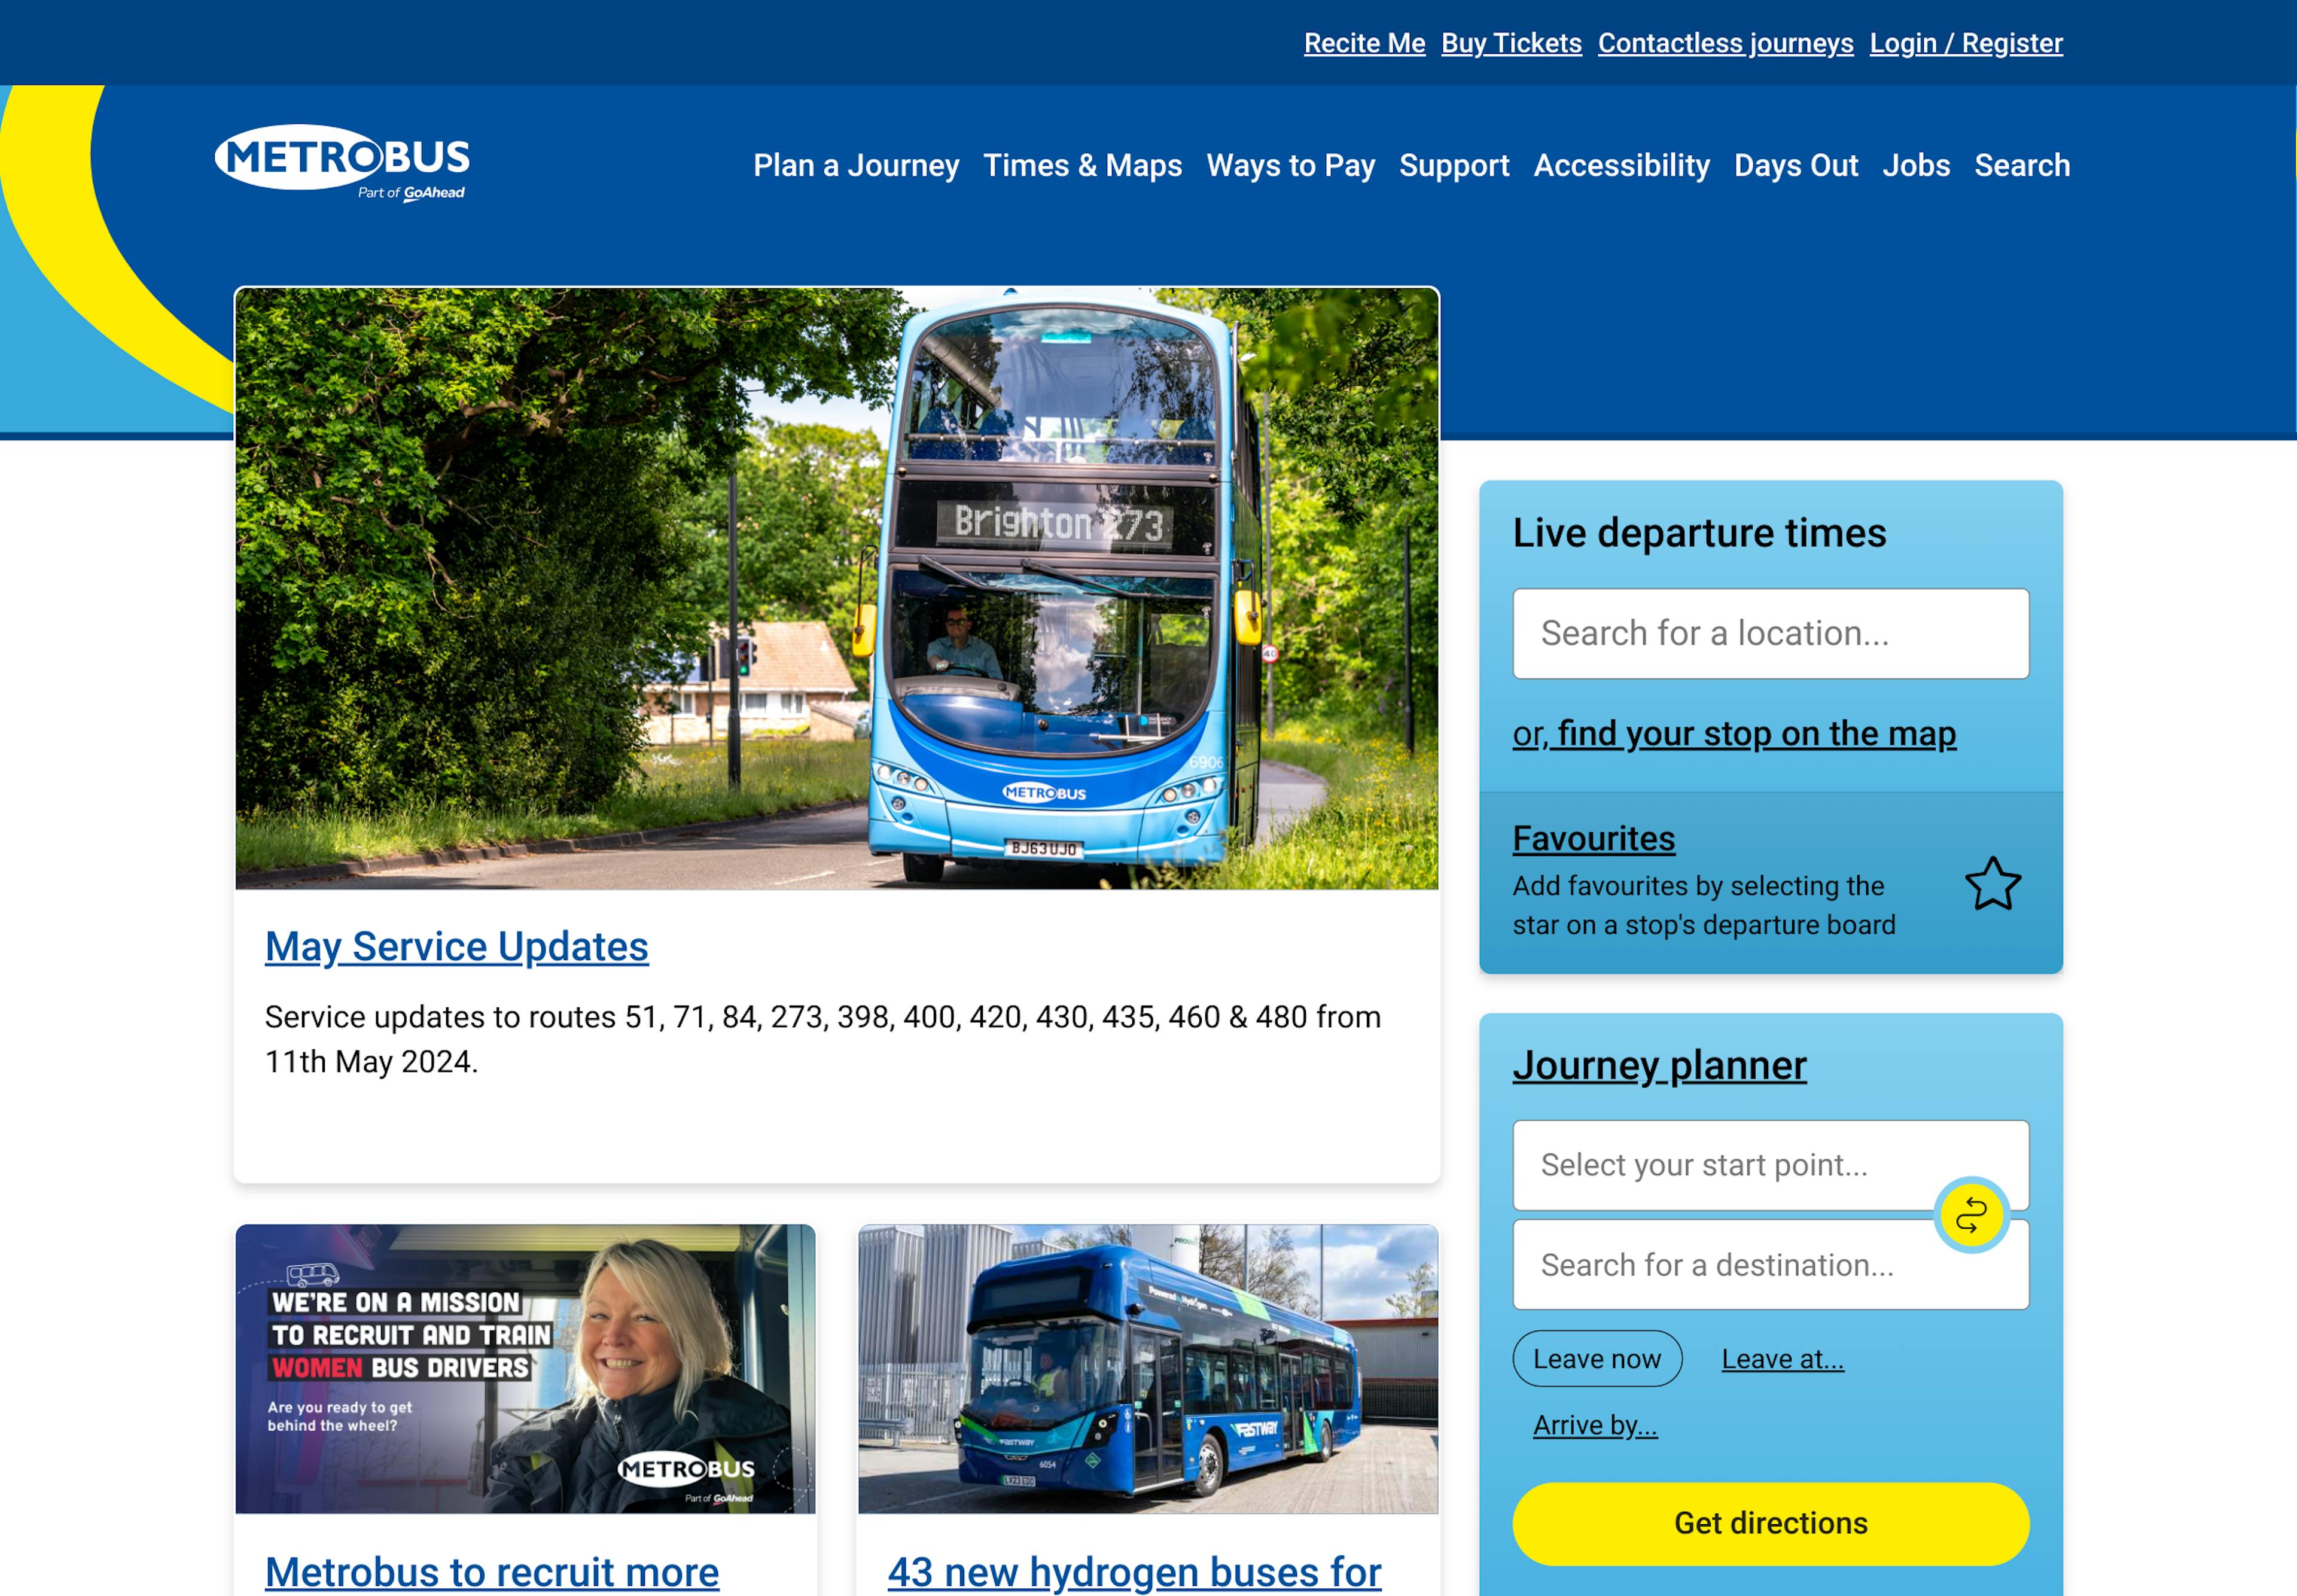 A screenshot of the Metrobus homepage